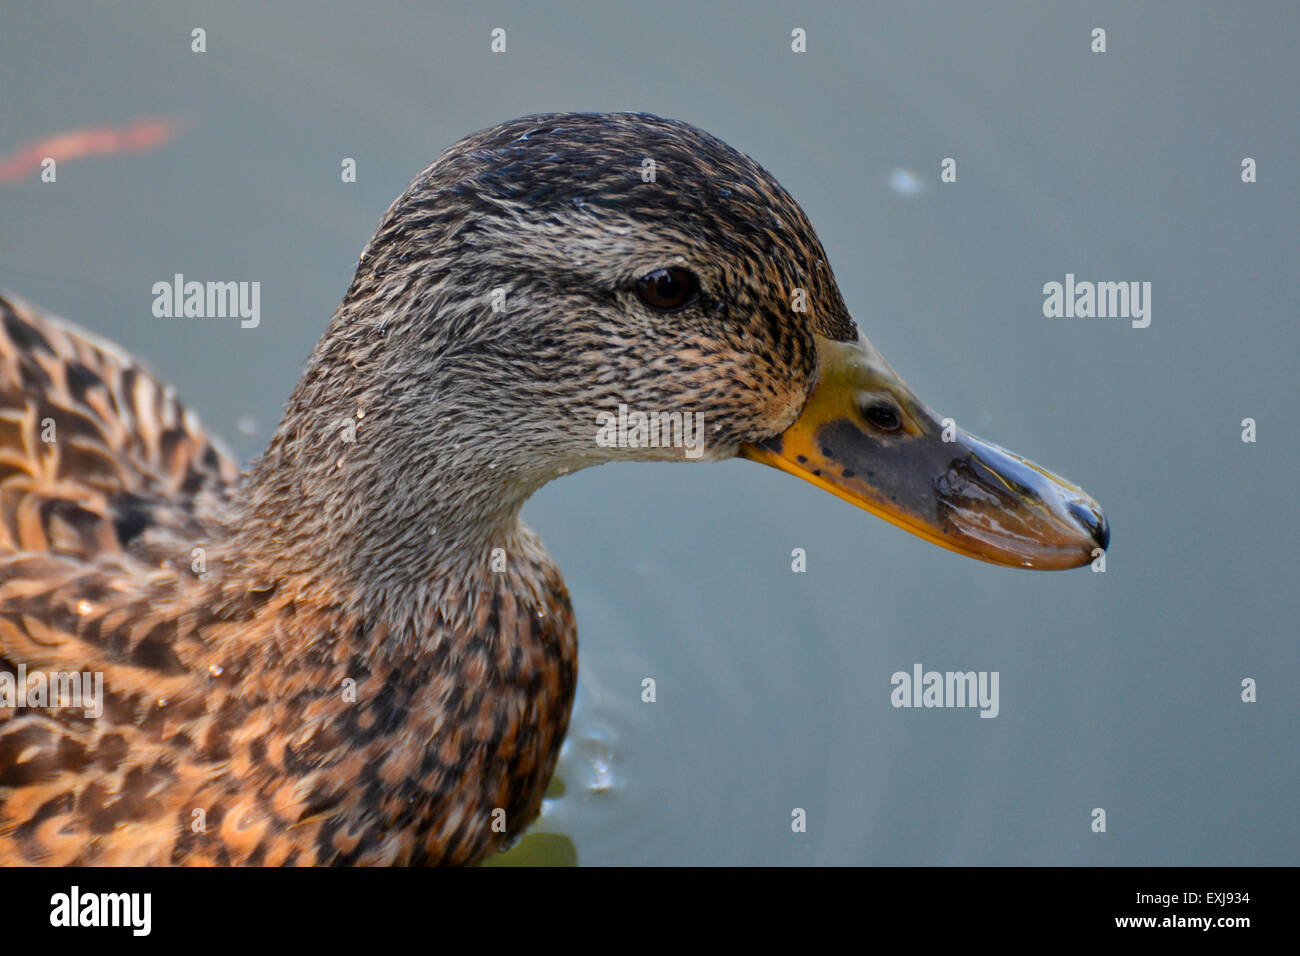 Ce fut capturé à la Chicago Botanic Garden. Il s'agit d'une photo en gros plan d'un canard nageant dans le bassin principal. Banque D'Images